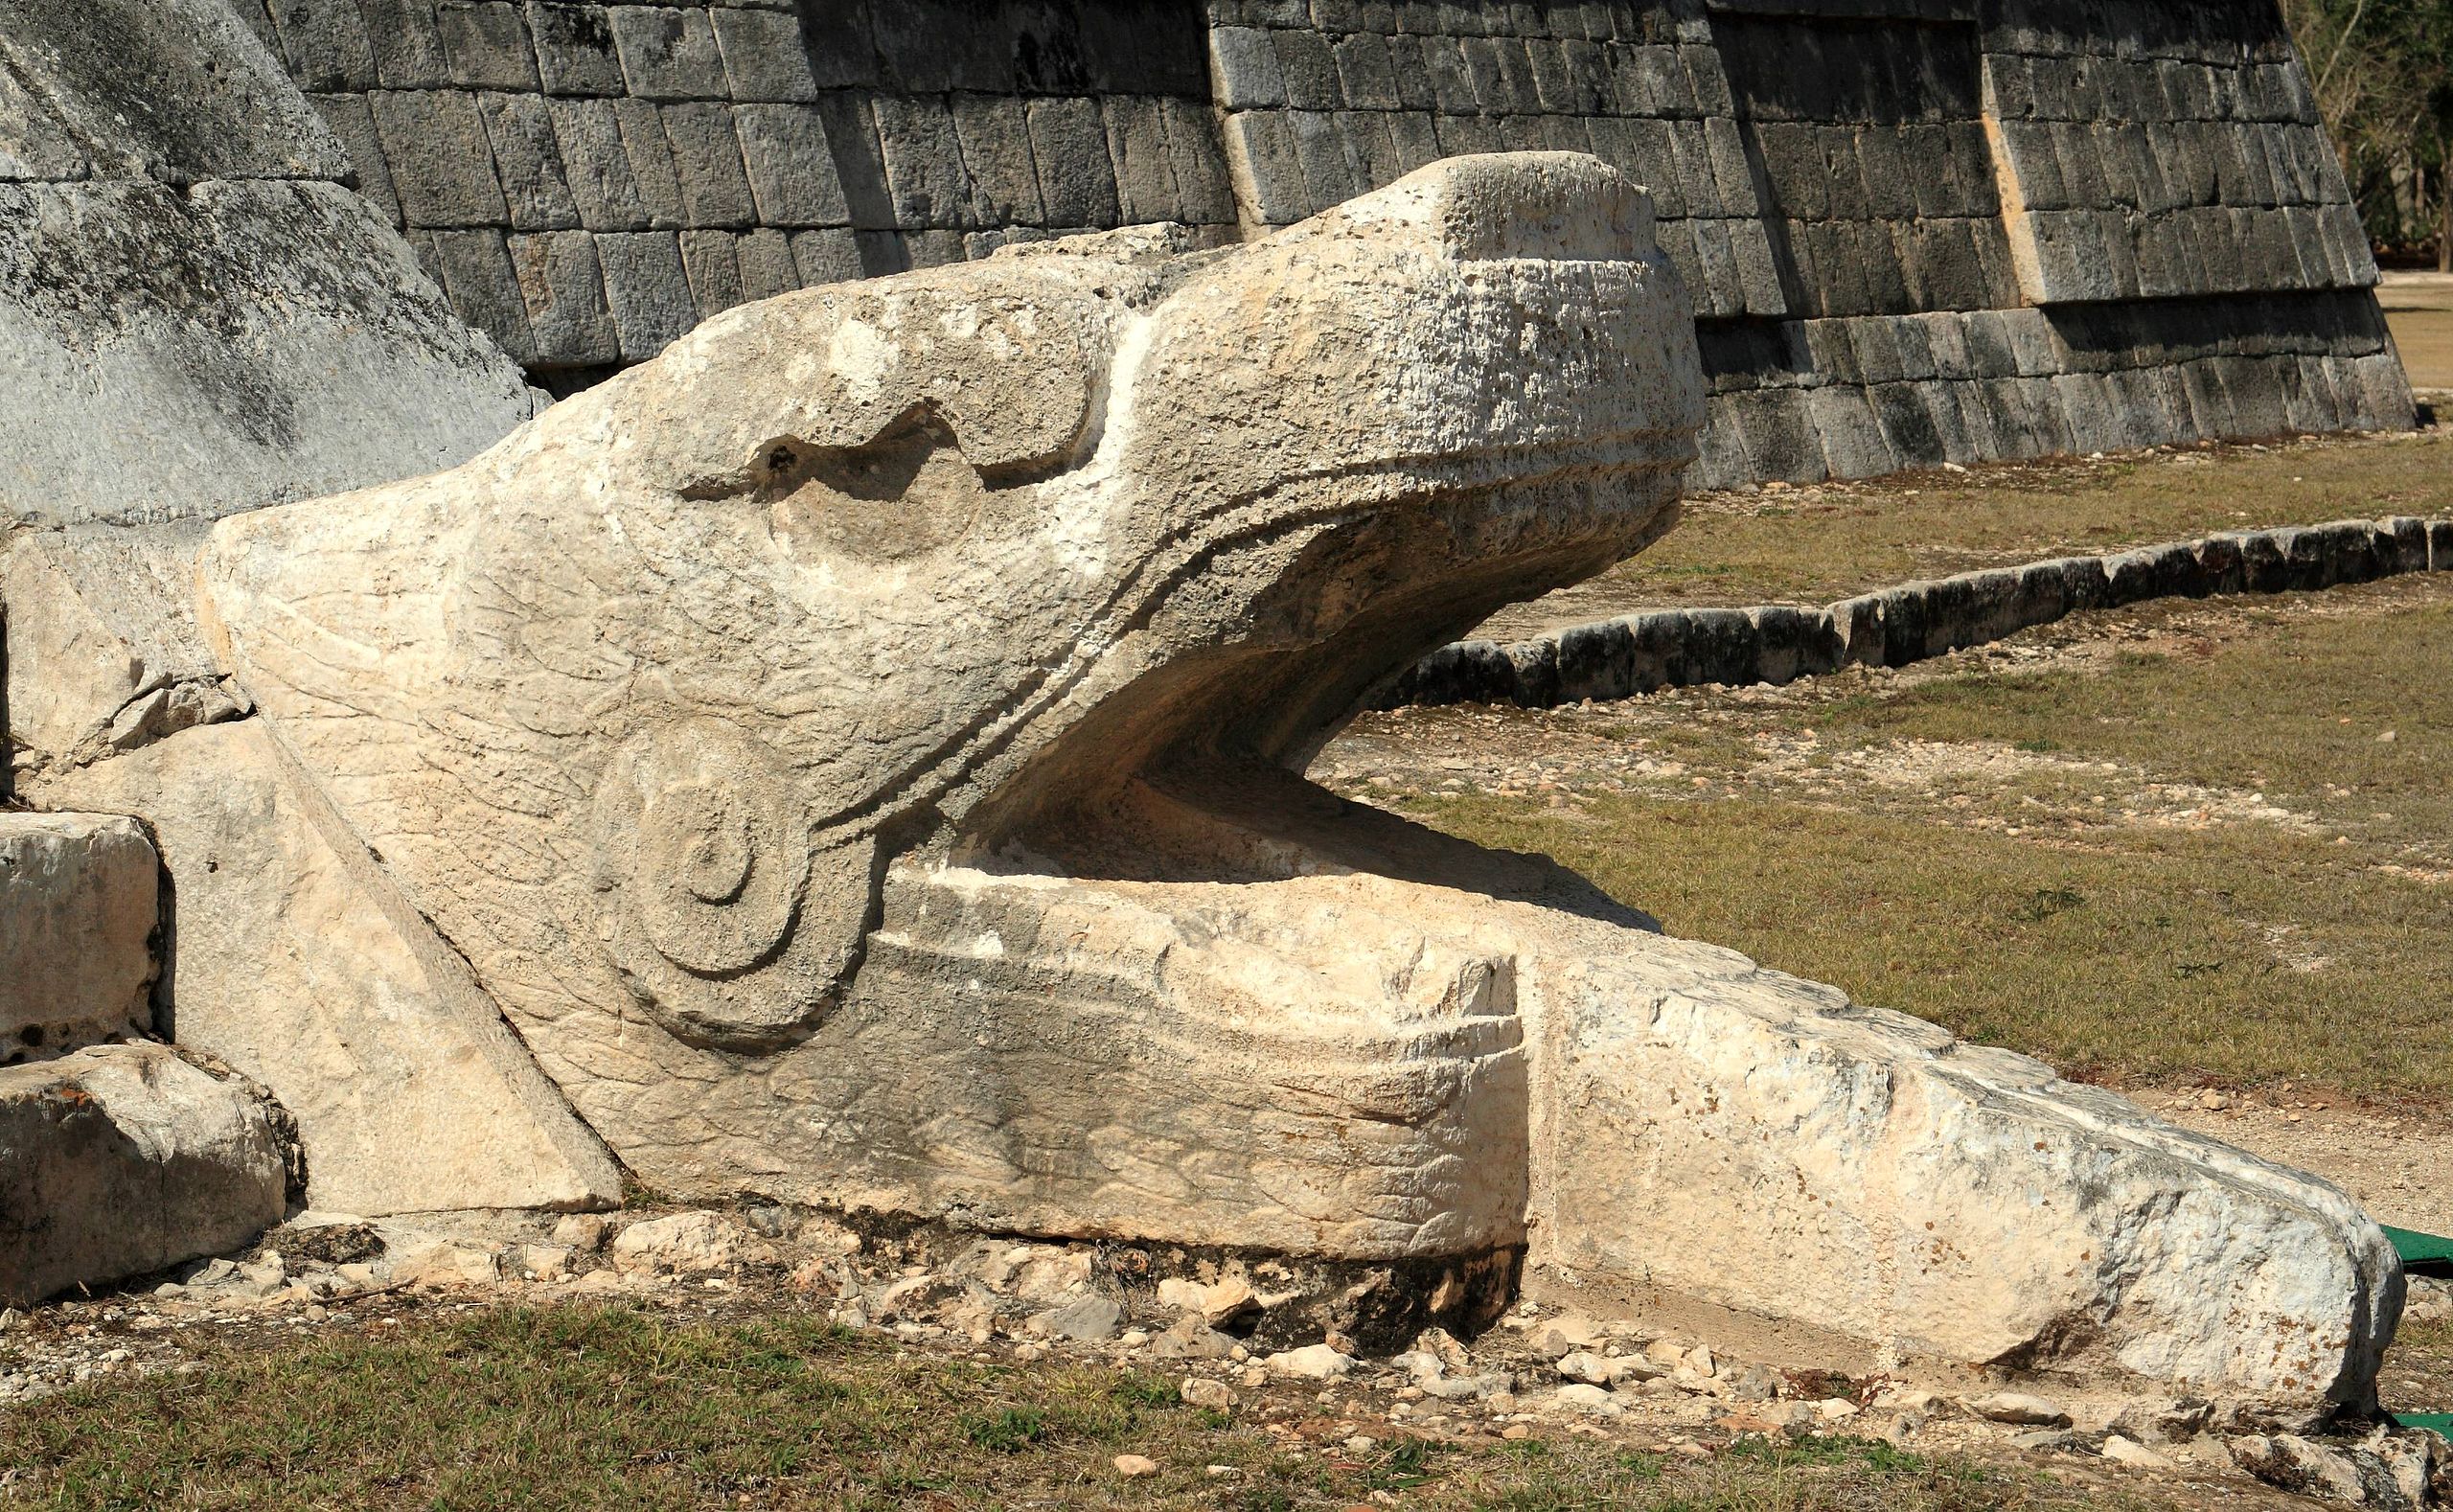 serpent head at El Castillo